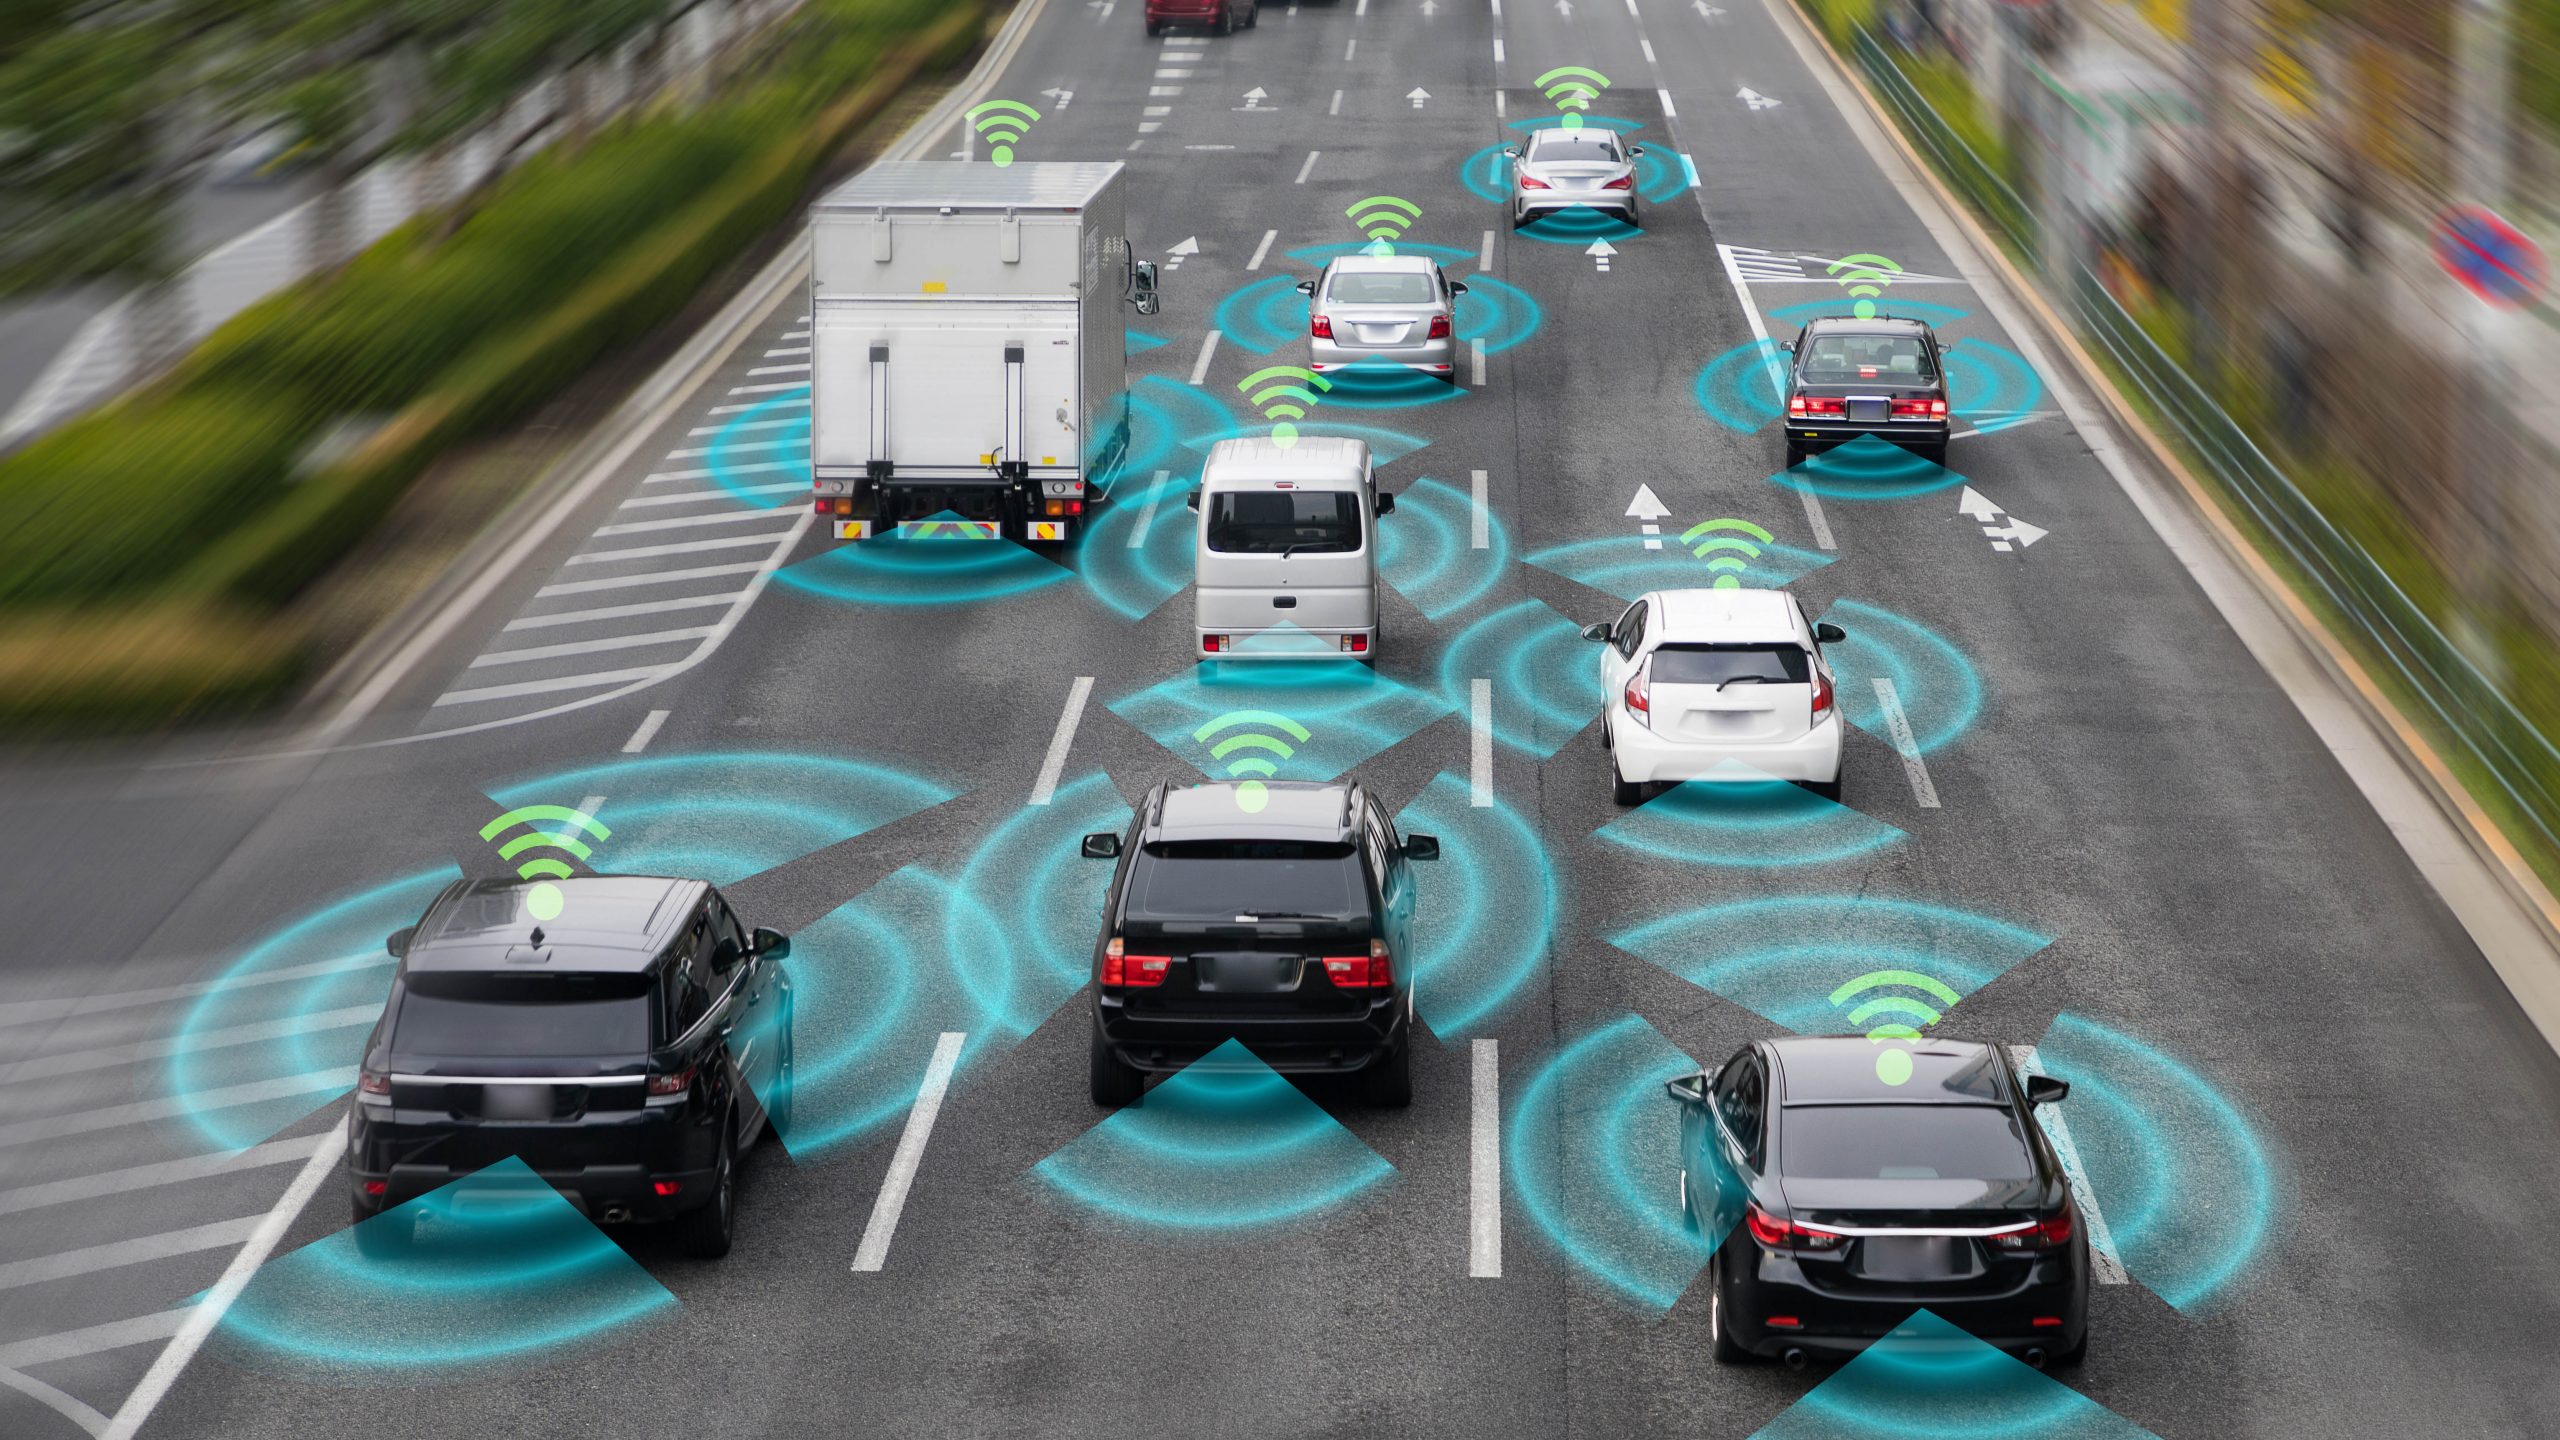 Xe tự lái là một ứng dụng tiên phong của ngành công nghiệp trí tuệ nhân tạo trong Logistics